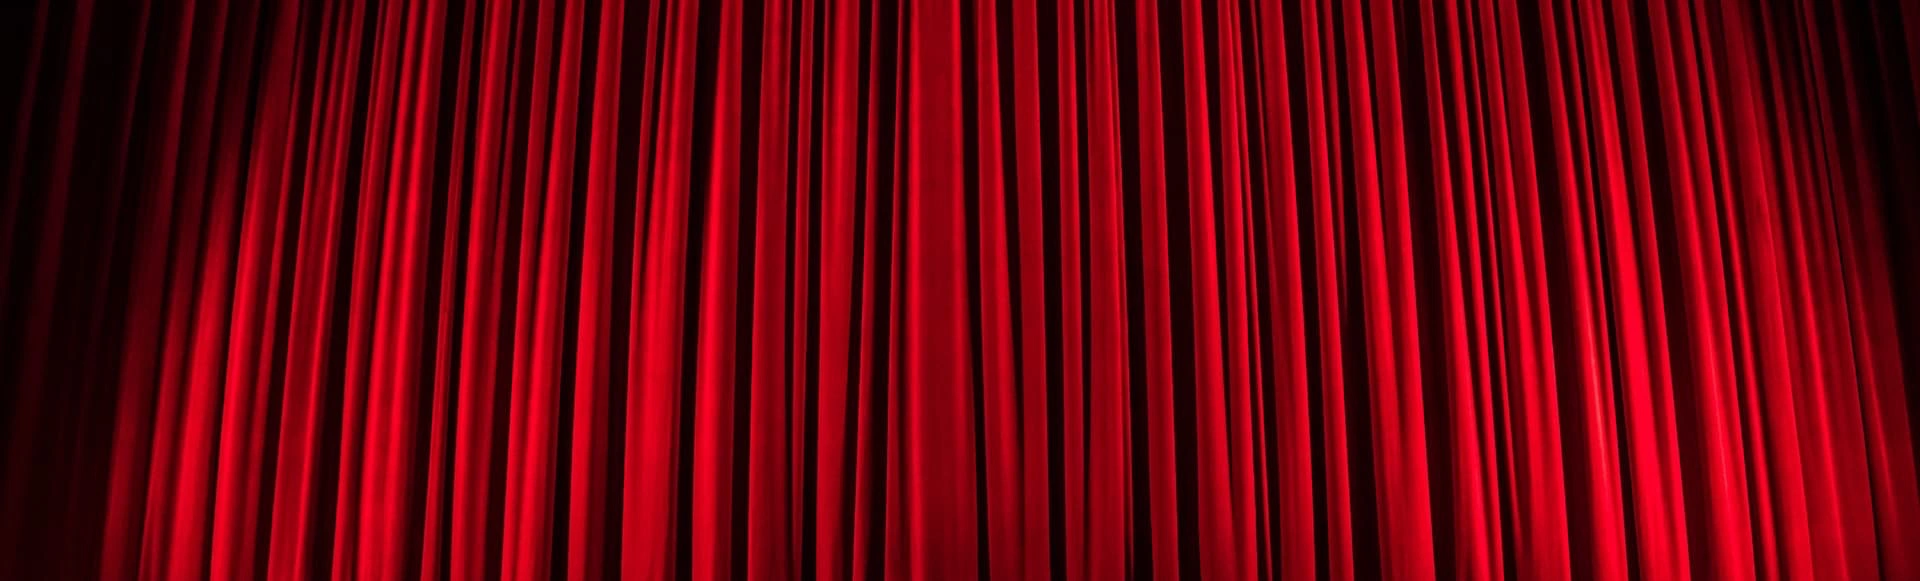 Скоро на сцене Театра на Таганке состоится поистине великолепное событие для всех ценителей театра и классической музыки – спектакль "Фигаро".